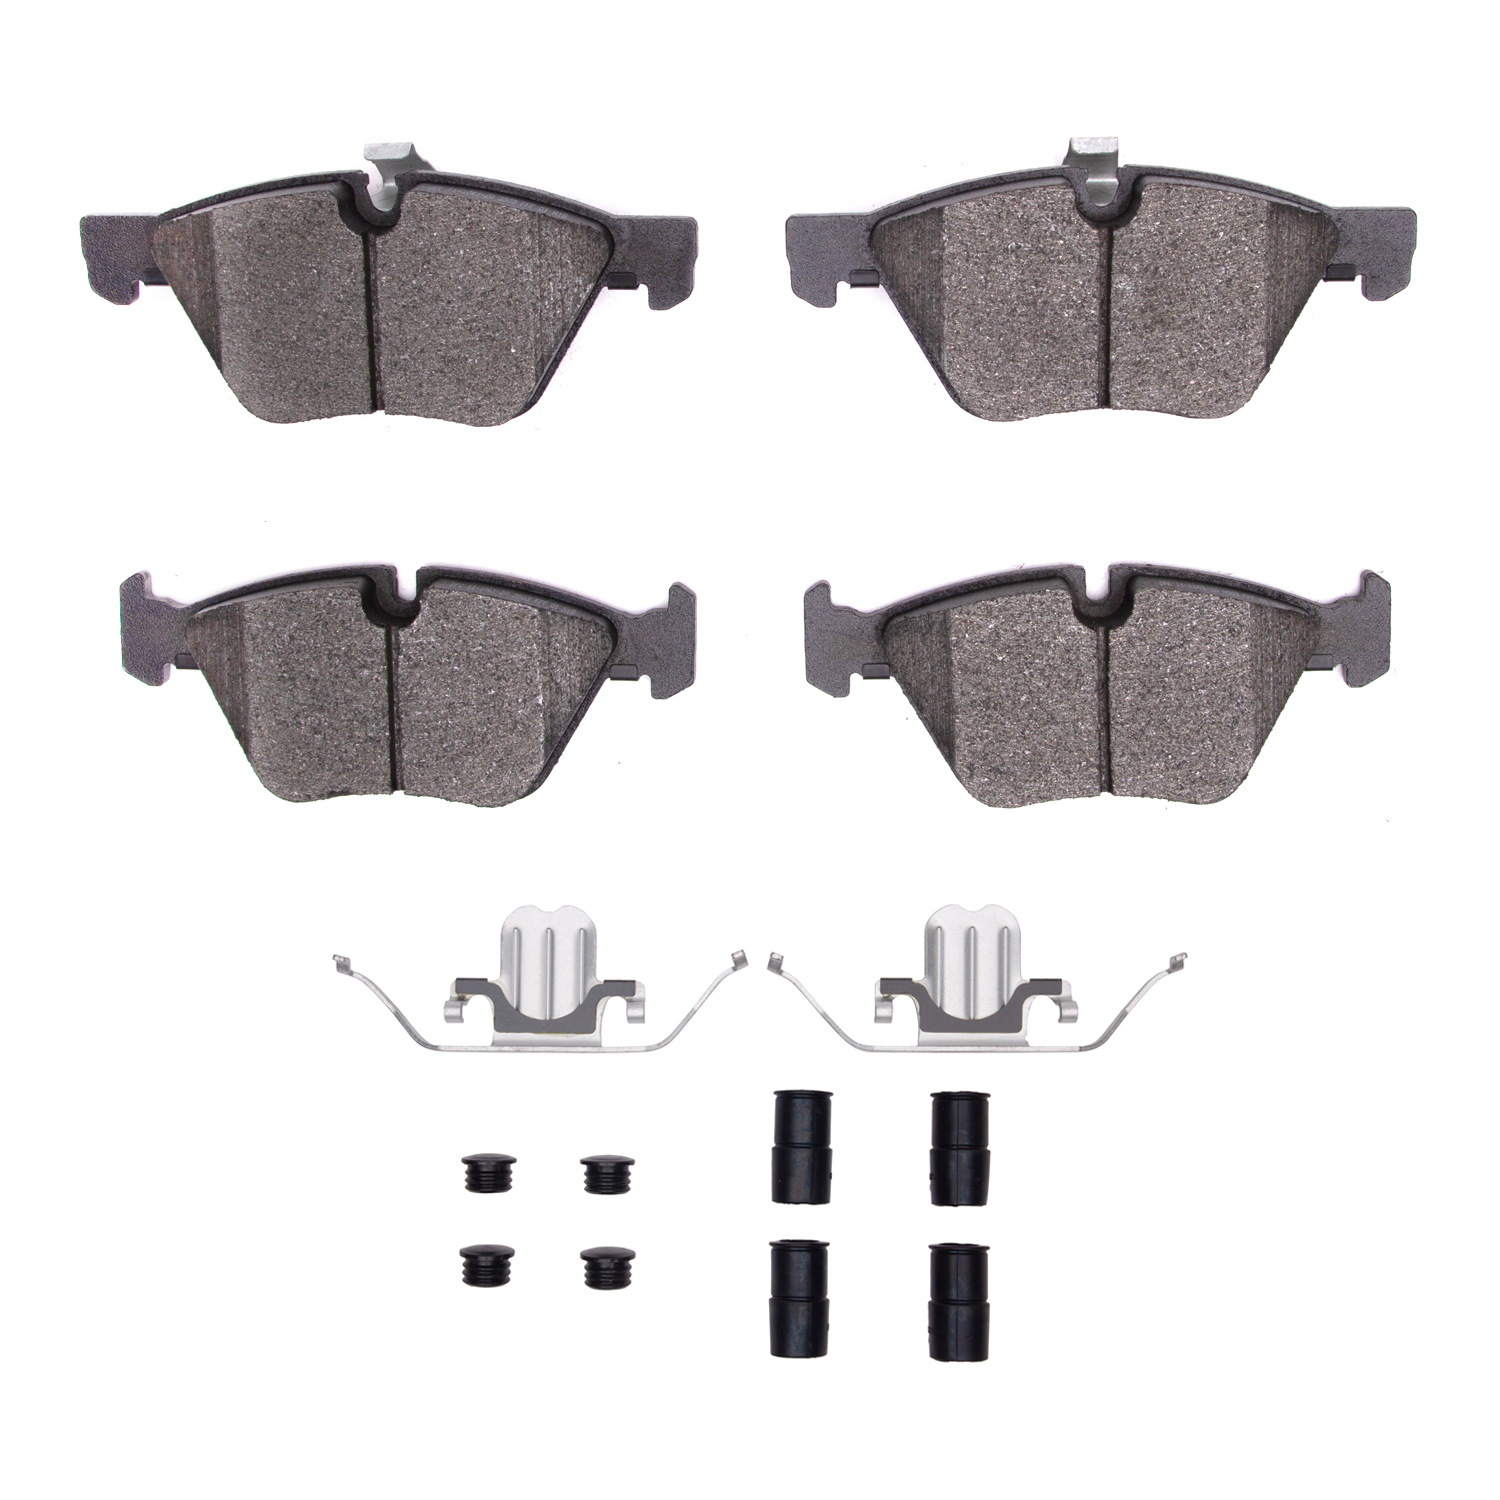 Semi-Metallic Brake Pads & Hardware Kit, 2004-2010 BMW, Position: Front